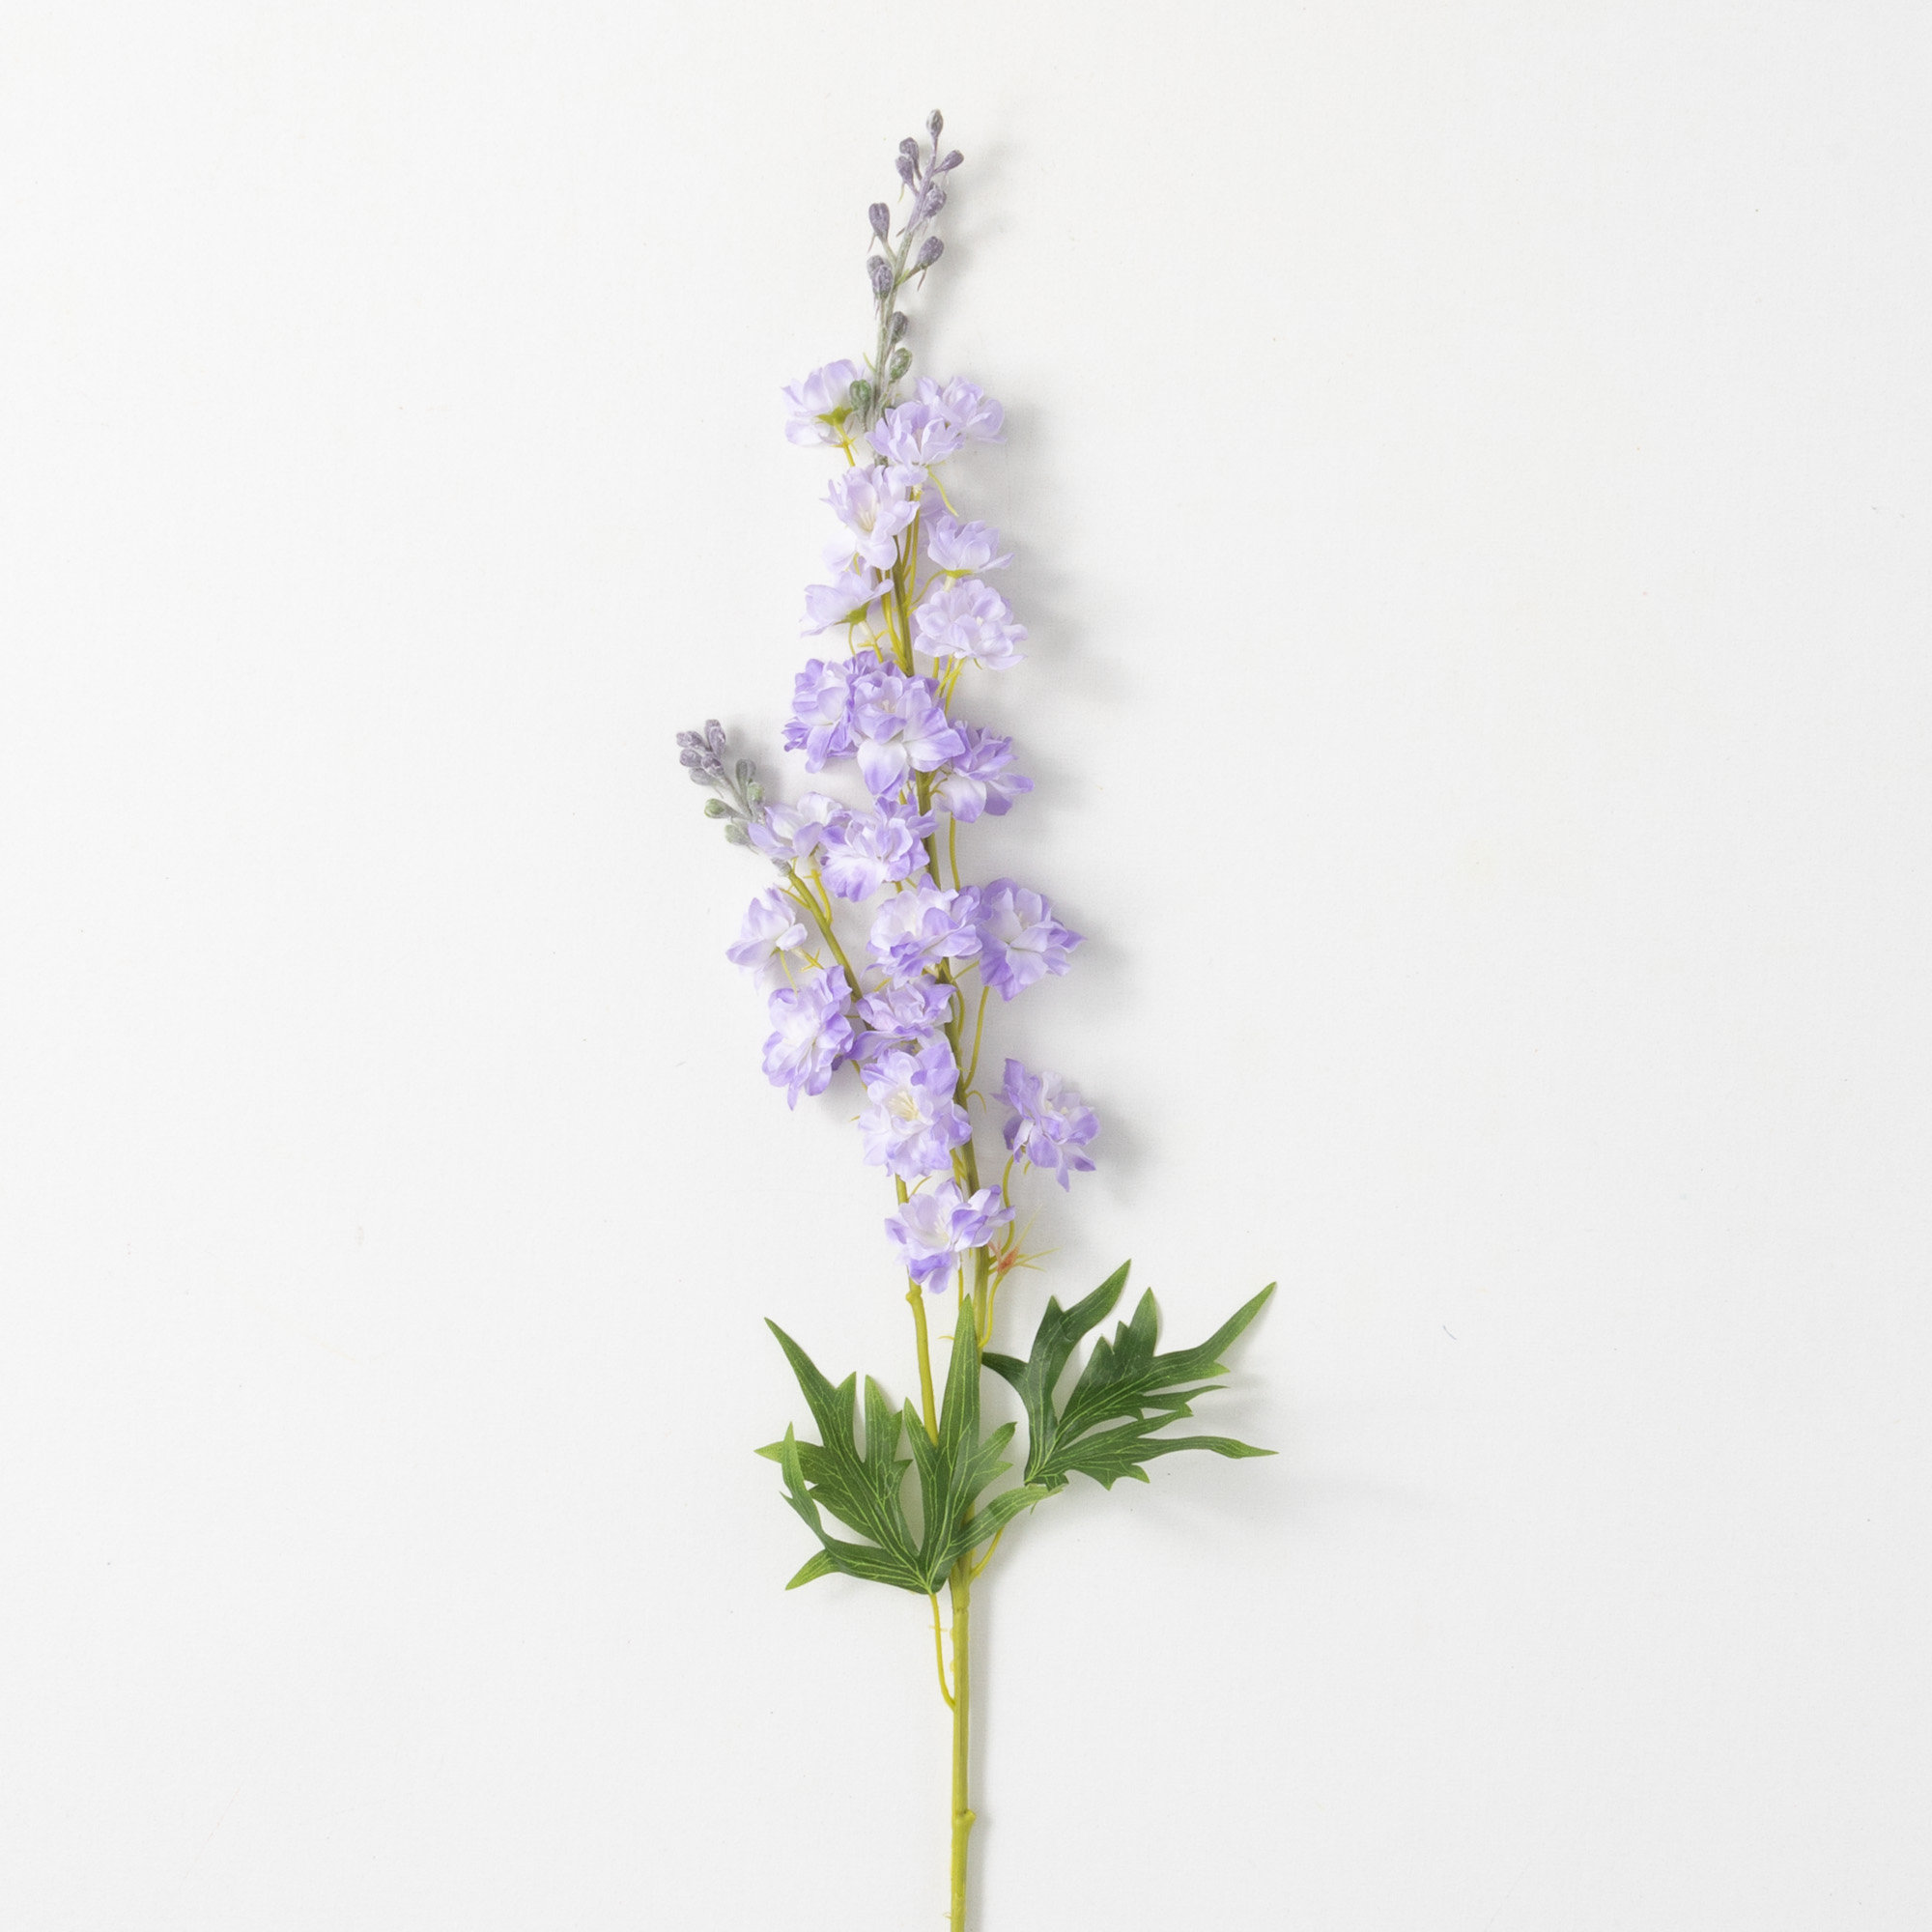 Purple Larkspur - Delphinium - Dried Flowers Forever - DIY